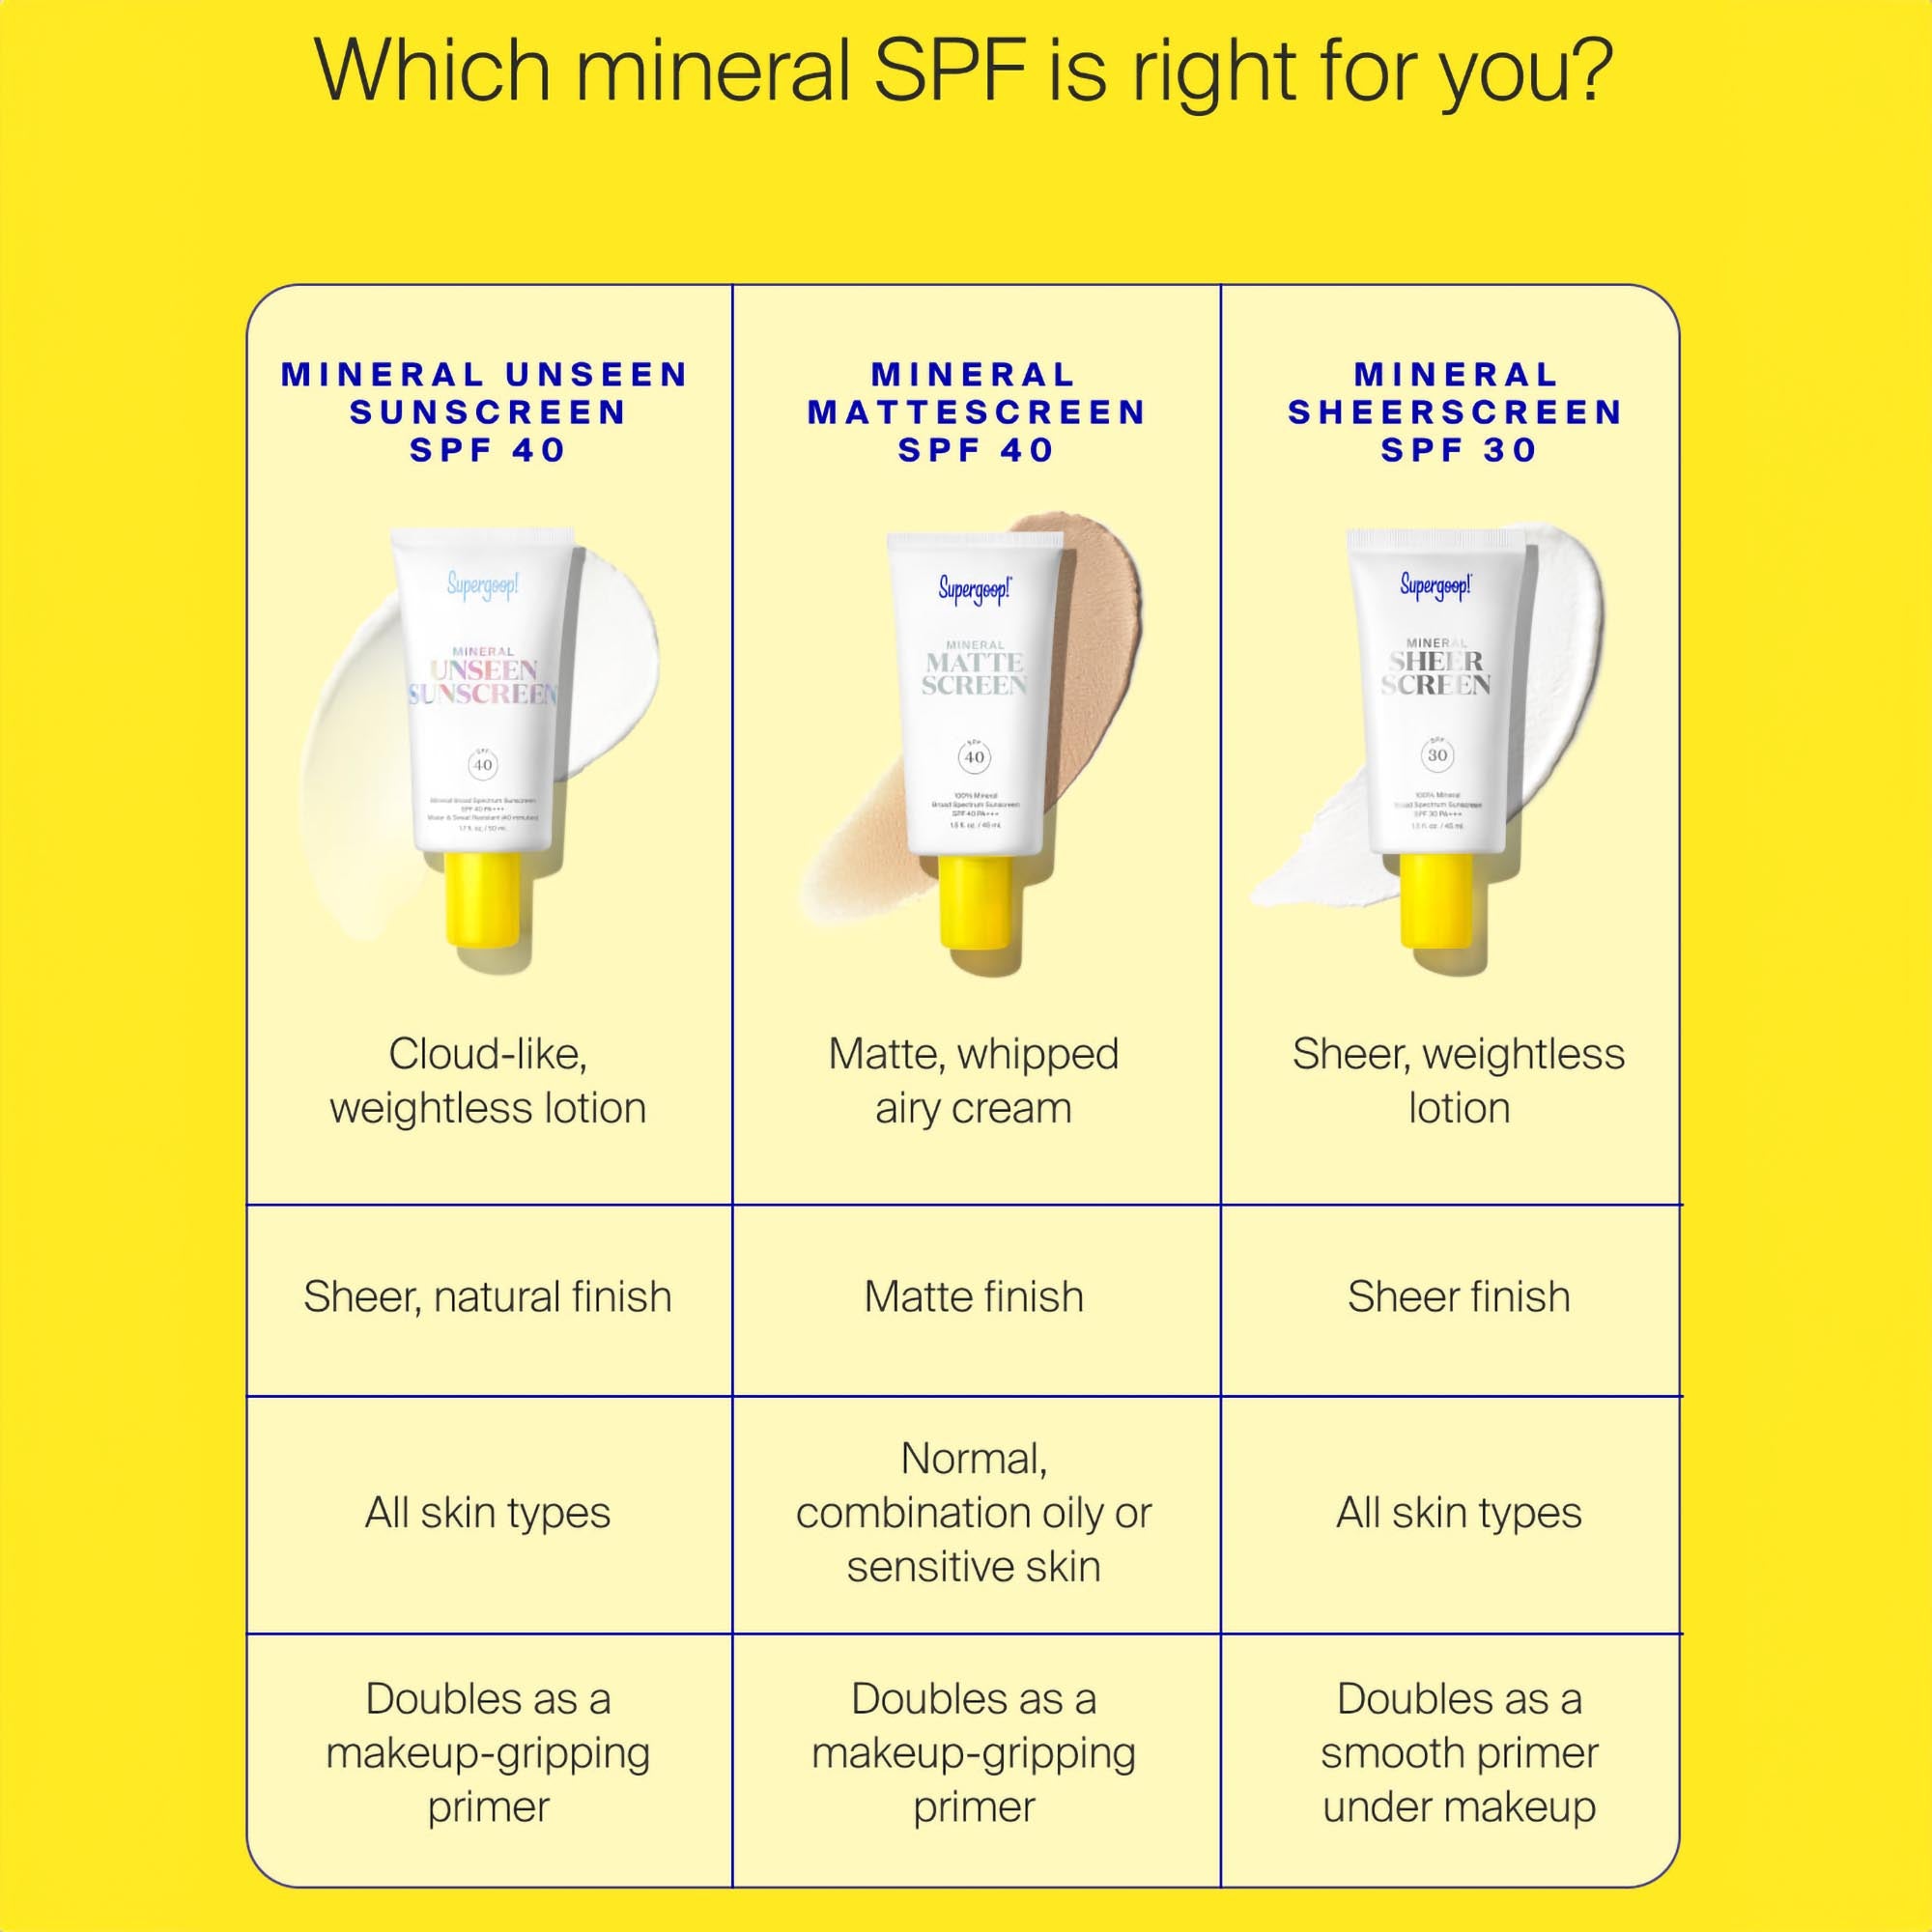 Supergoop! Mineral Unseen Sunscreen SPF 40 / 1.7OZ